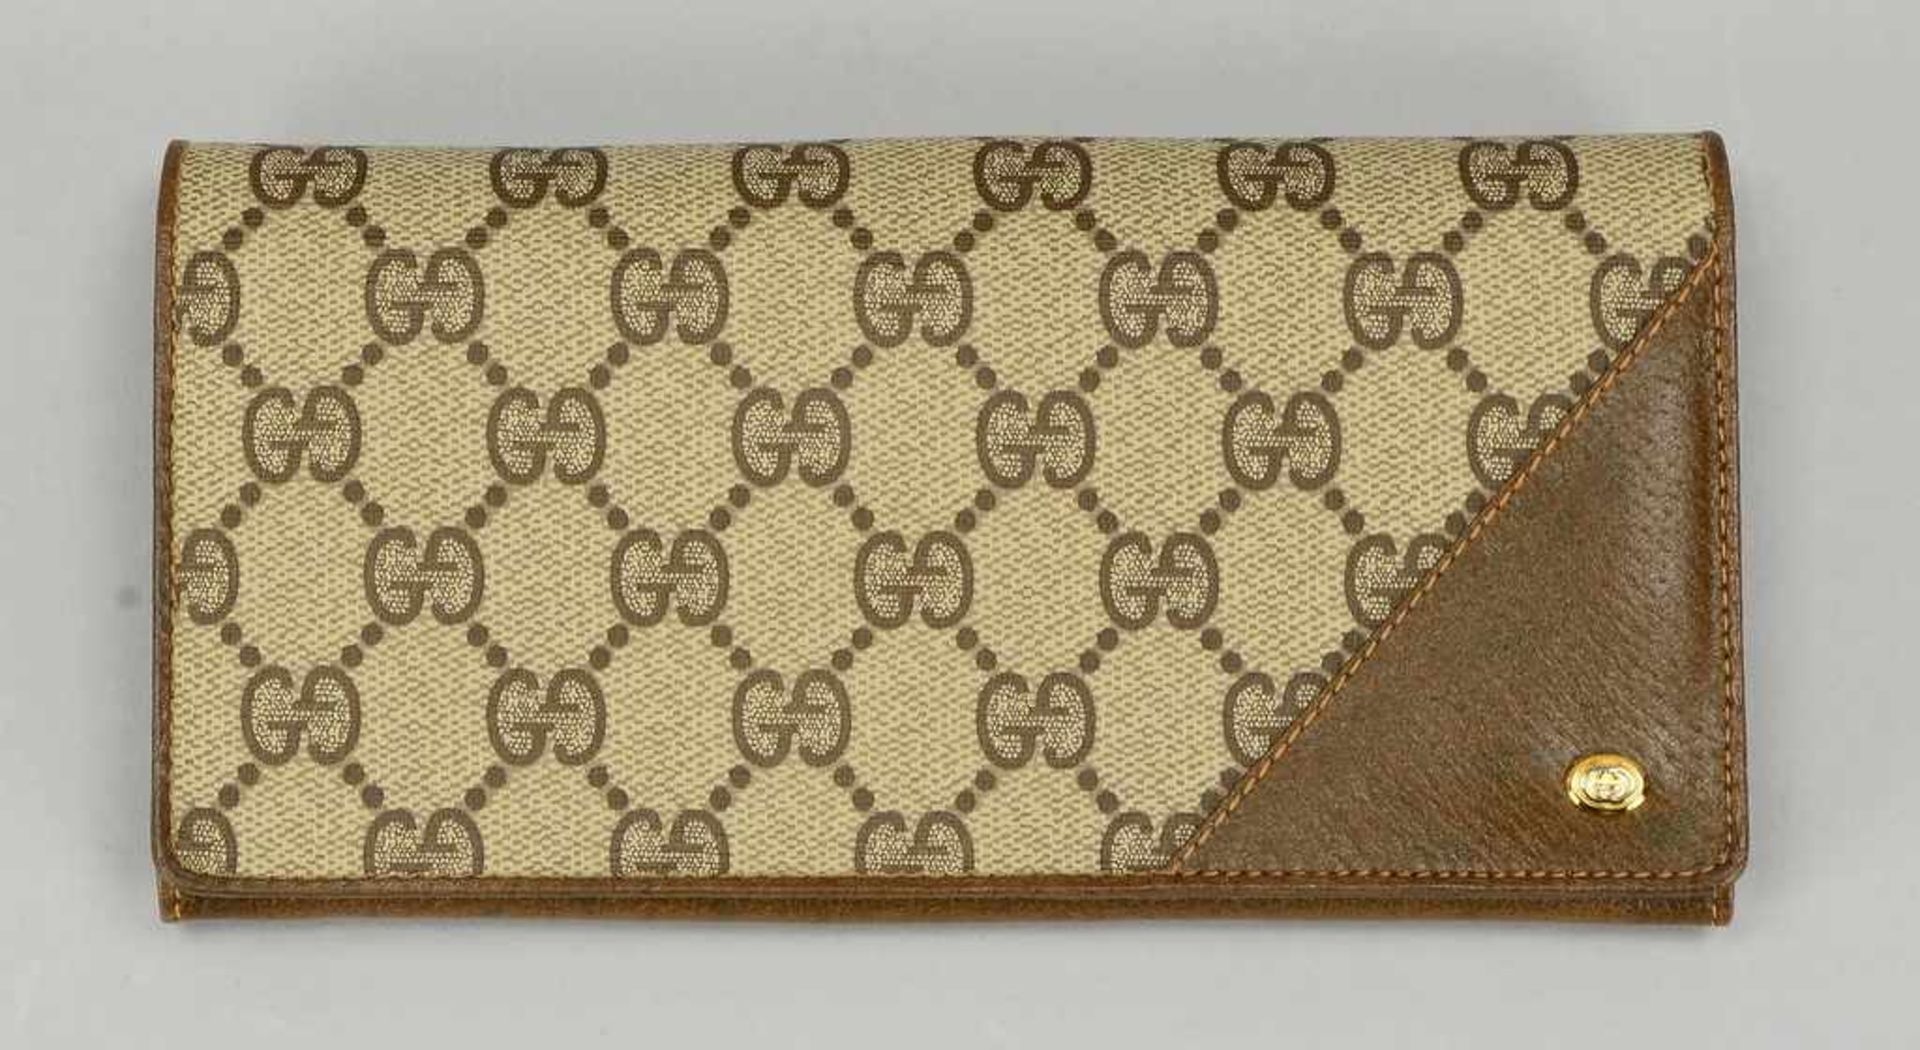 Gucci Accessory Collection, Portemonnaie/Börse, Teilleder, neuwertiger Zustand (unbenutzt), in - Bild 2 aus 2